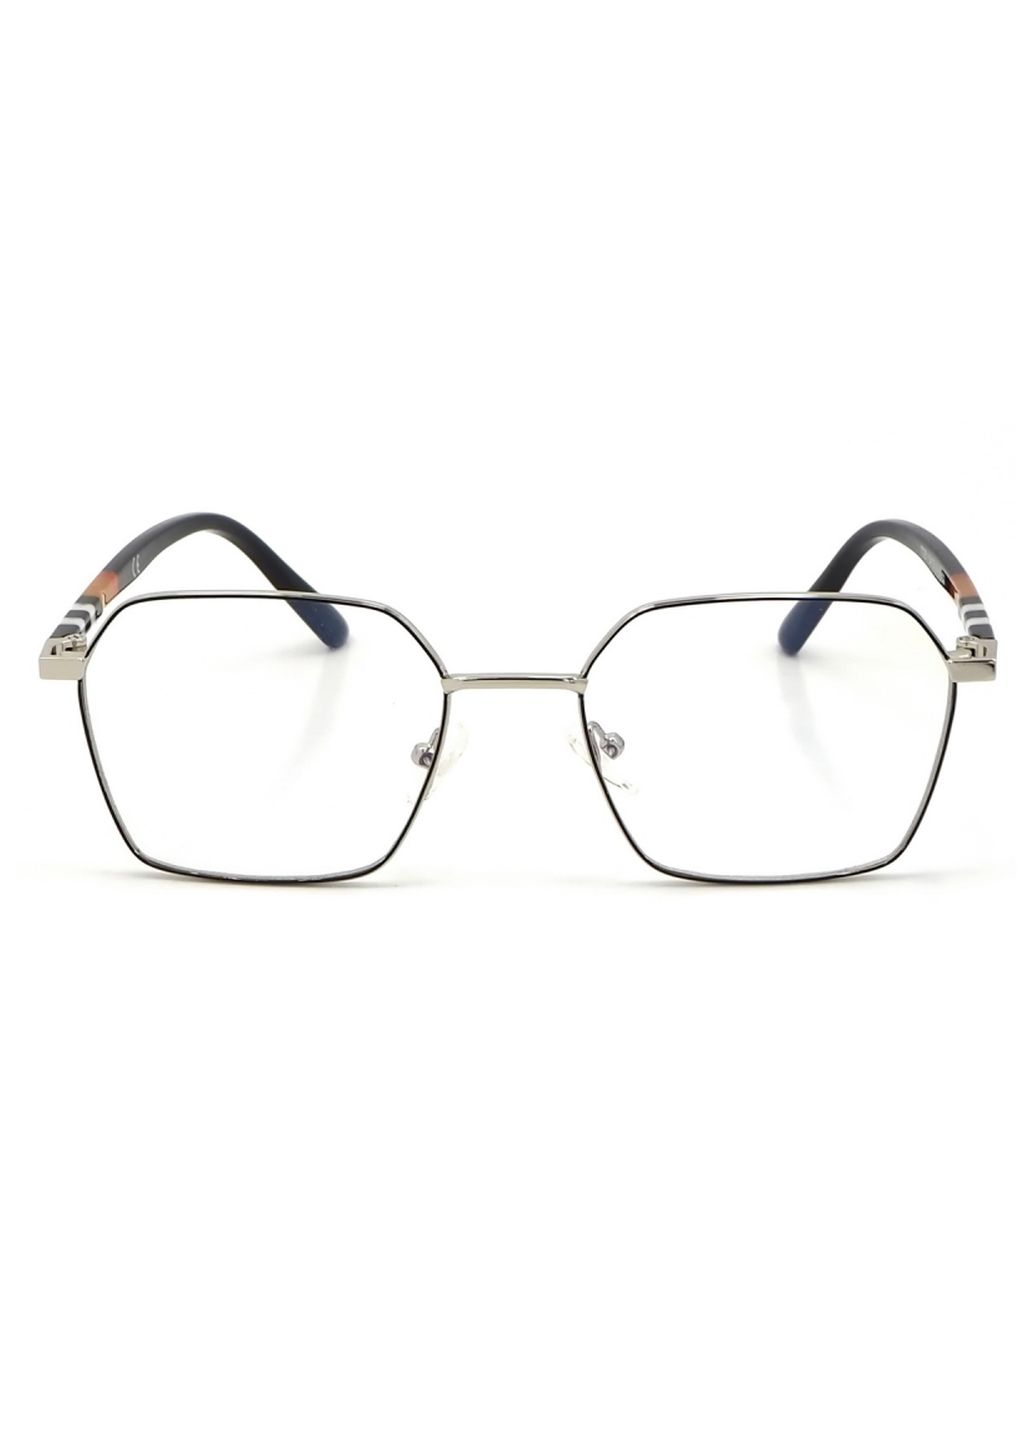 Купить Очки для работы за компьютером Cooper Glasses в серебристой оправе 124019 в интернет-магазине